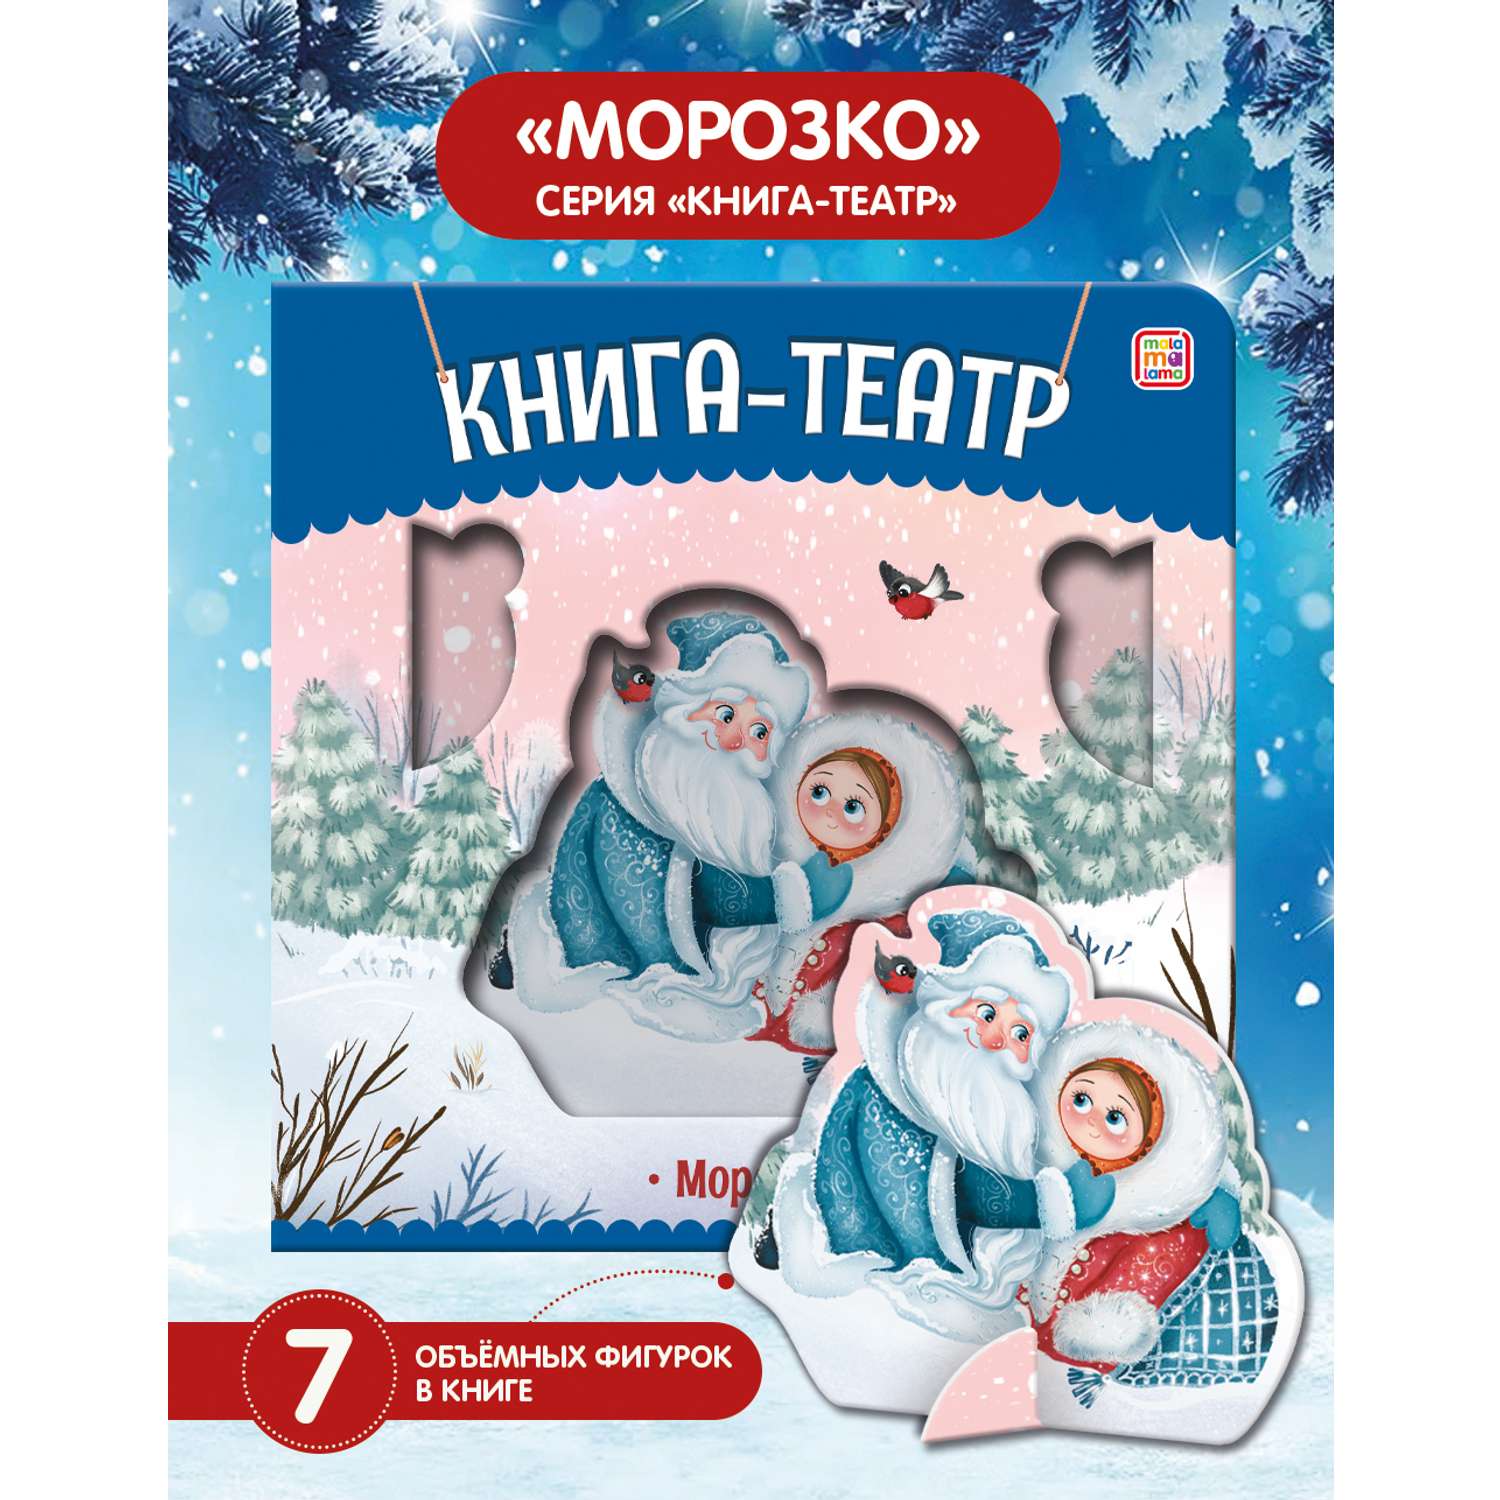 Сценарий праздника Новый год на тему: «Морозко» - корпорация Российский Учебник